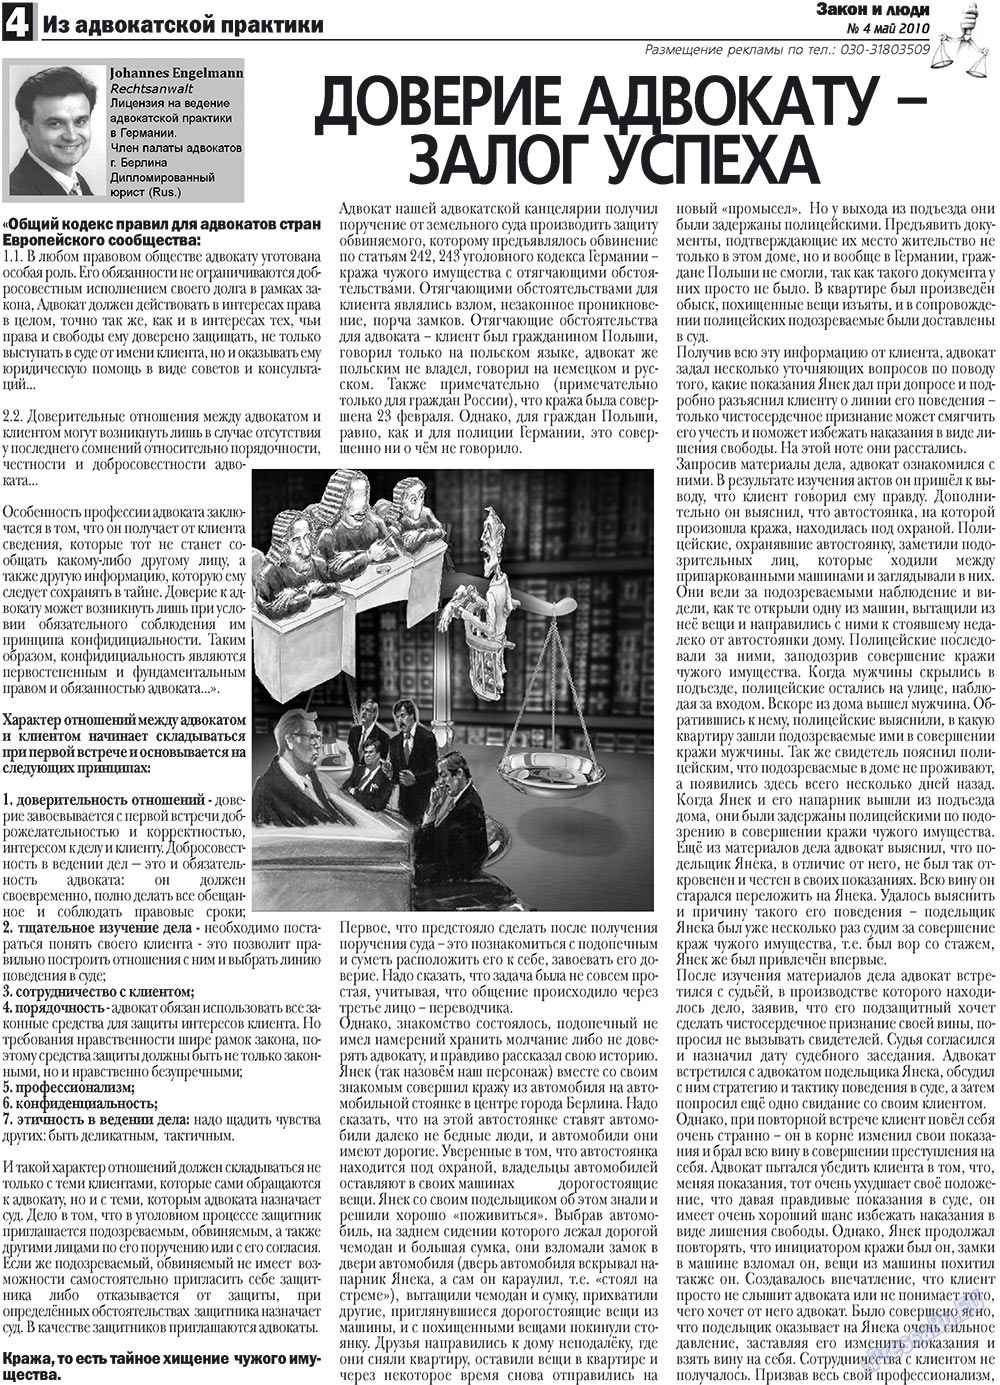 Закон и люди, газета. 2010 №4 стр.4